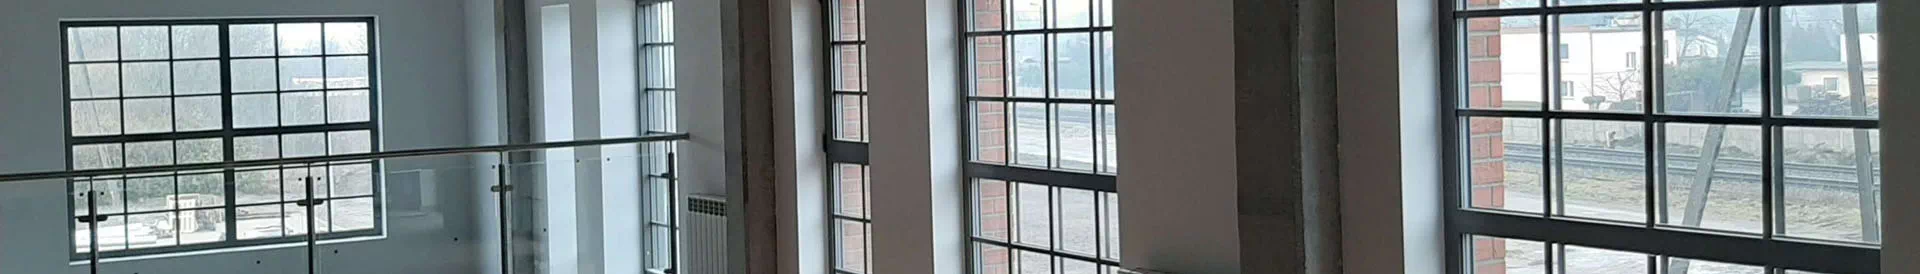 okna z widokiem na tory